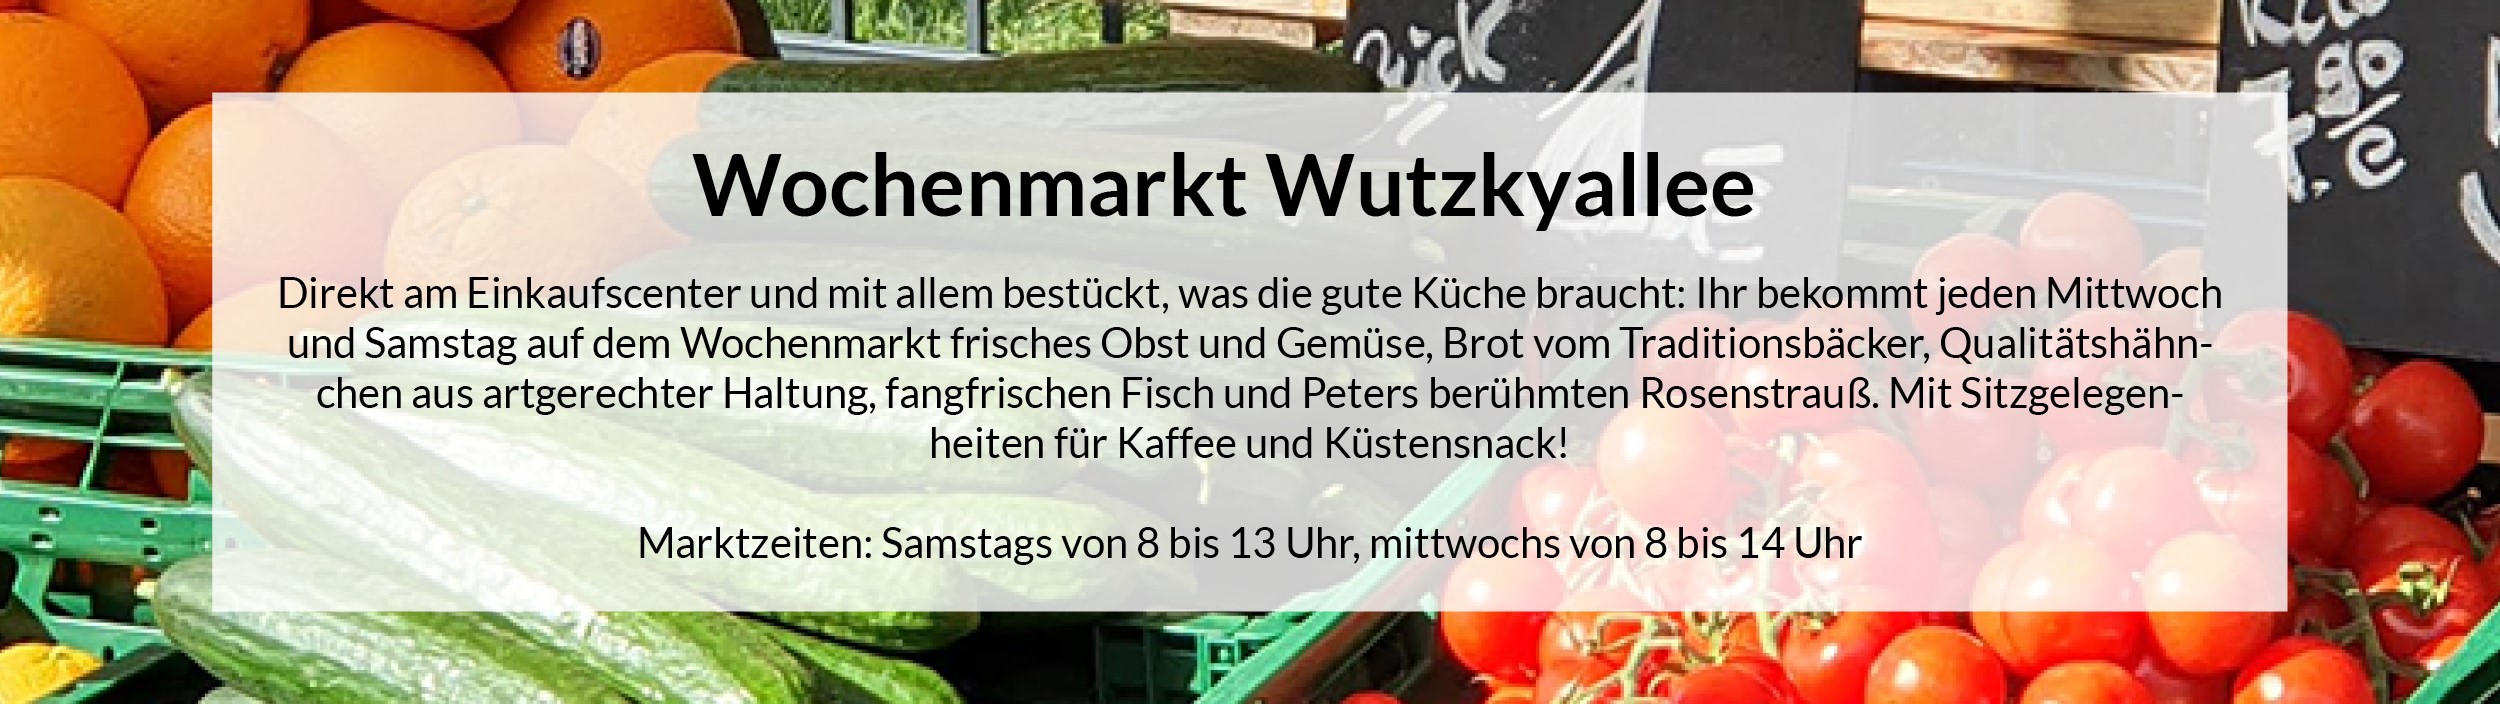 Wochenmarkt Wutzkyallee